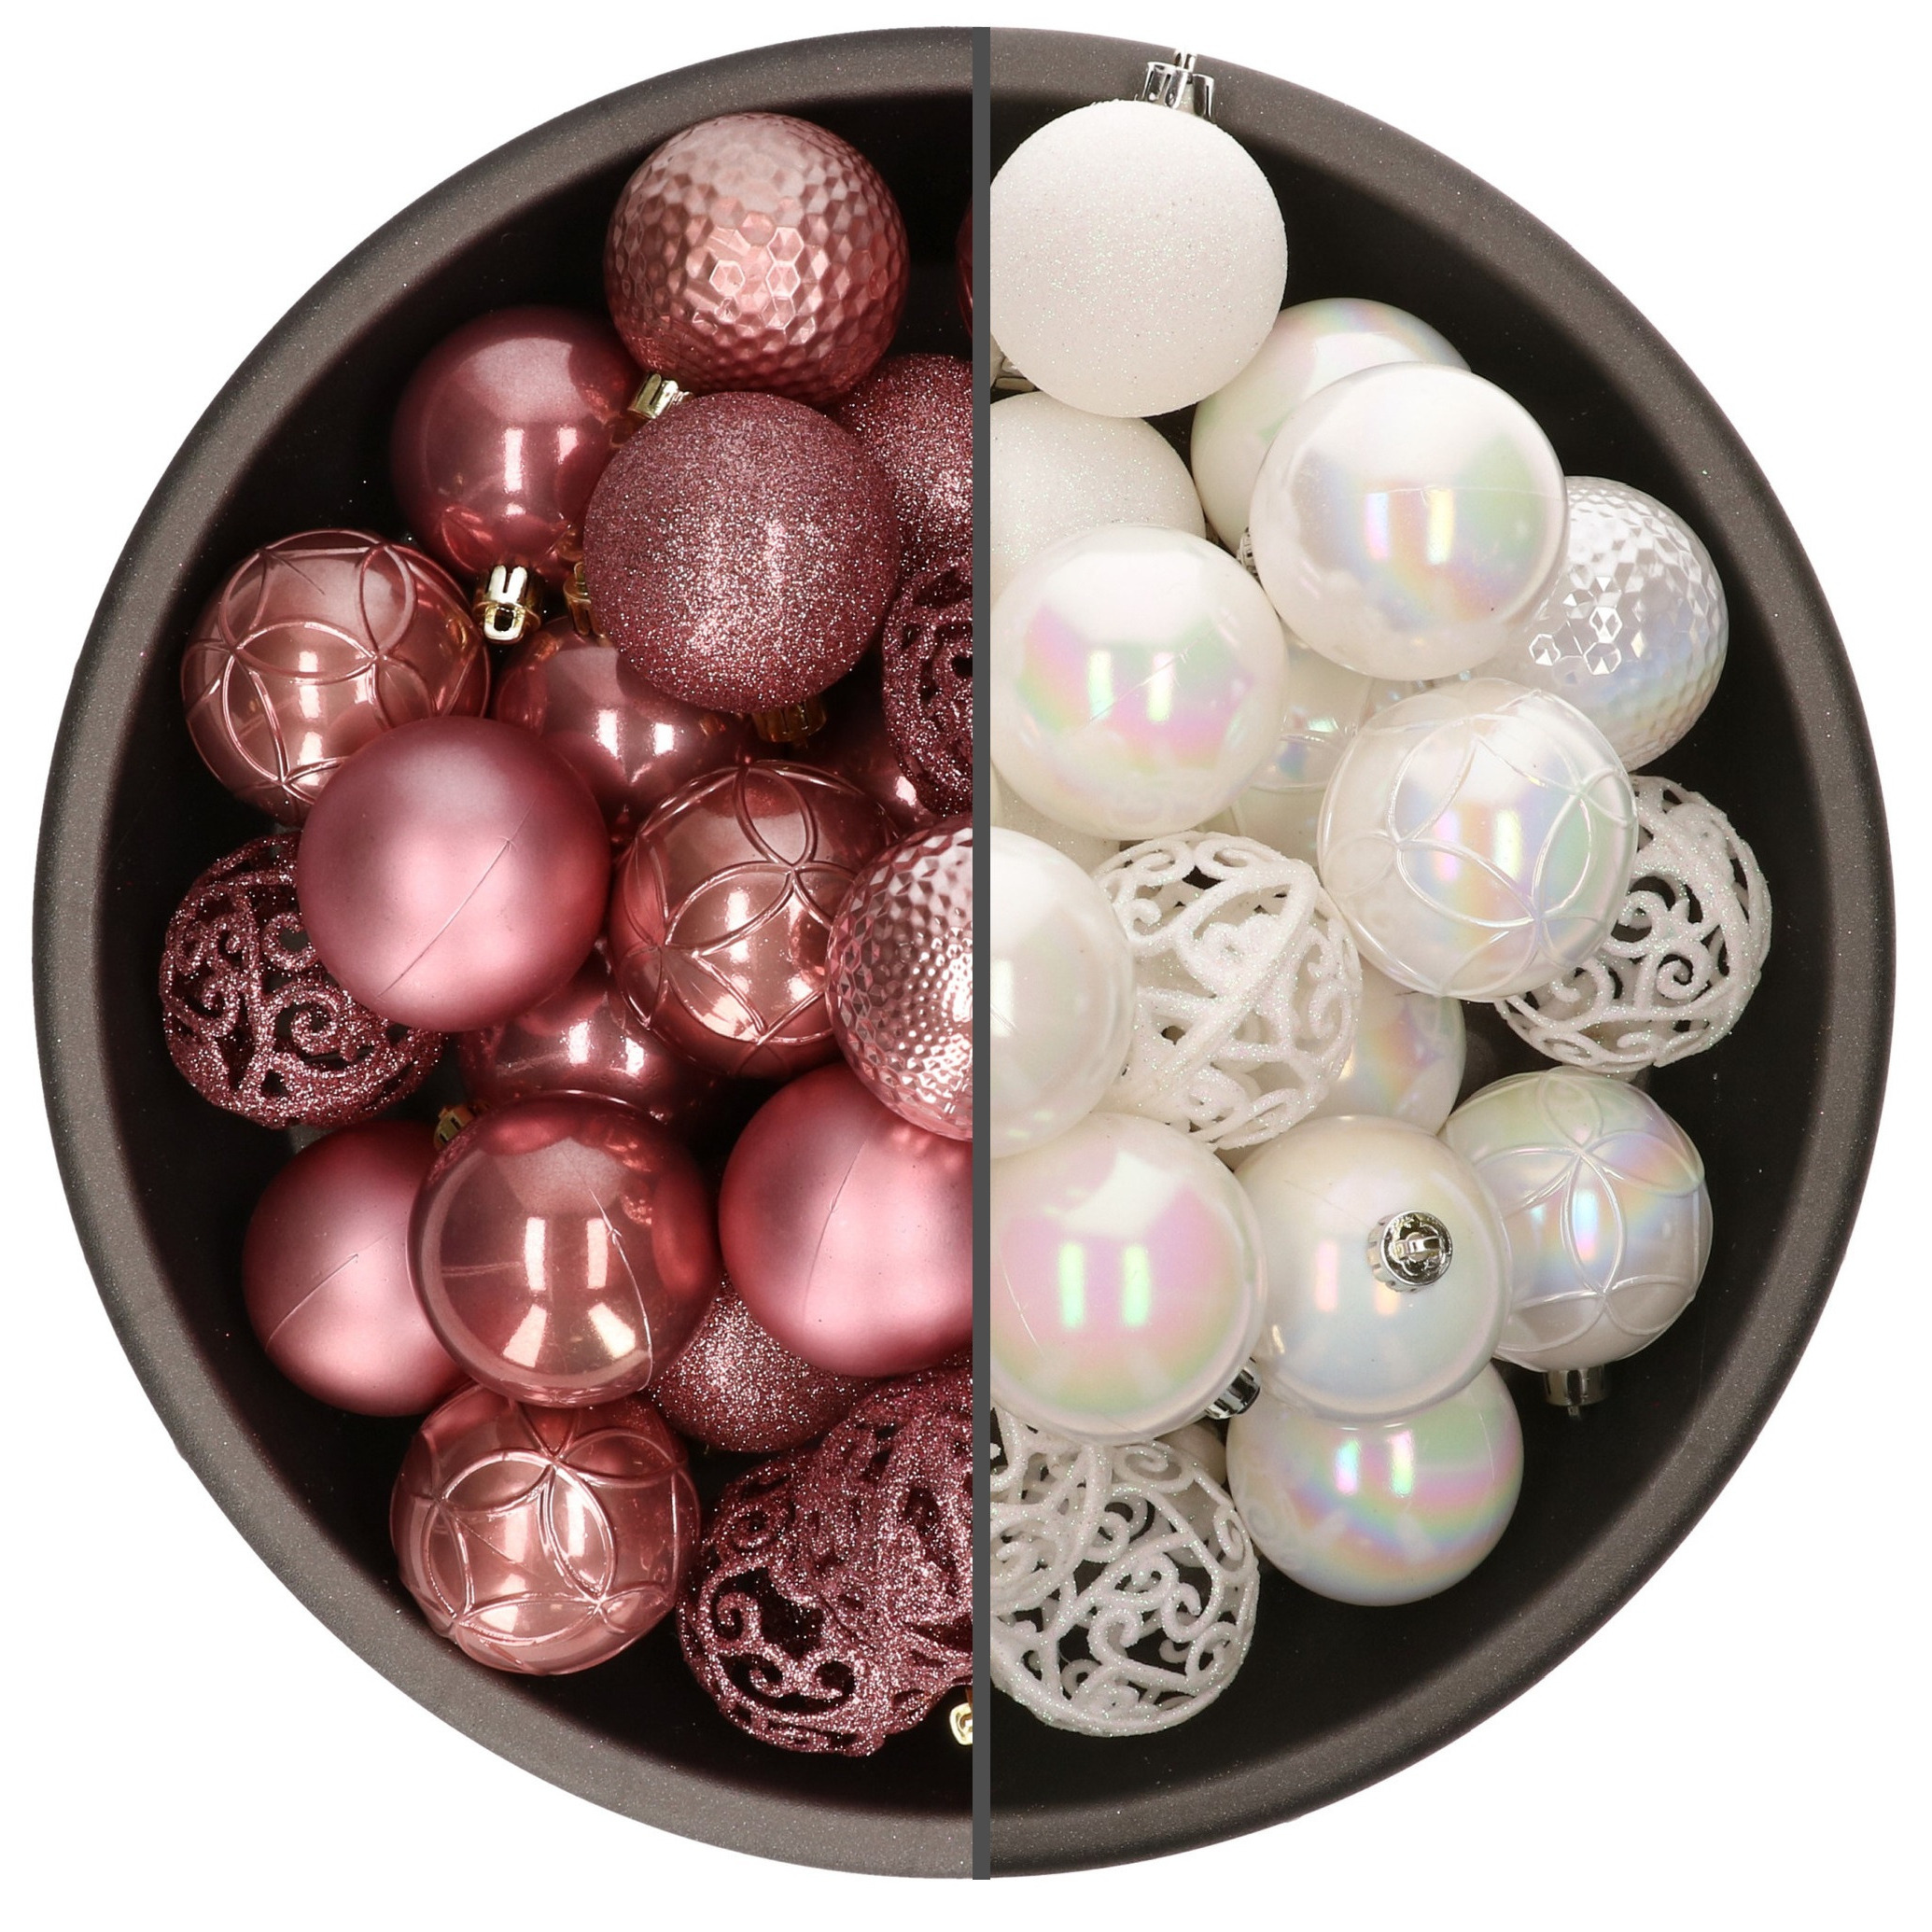 74x stuks kunststof kerstballen mix van parelmoer wit en oudroze 6 cm